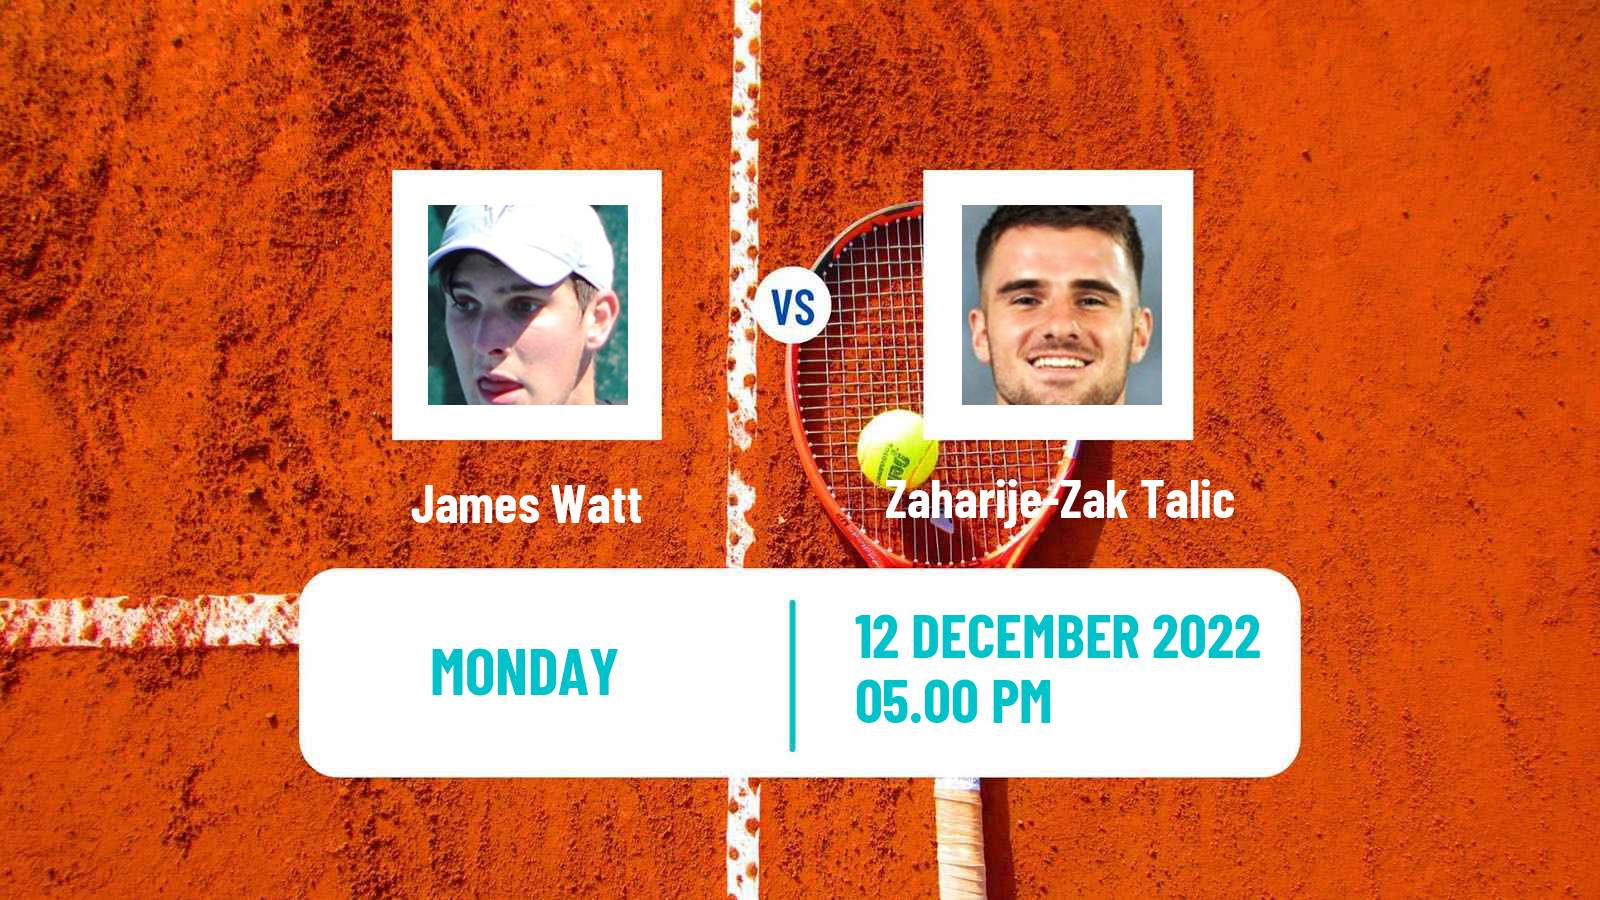 Tennis ITF Tournaments James Watt - Zaharije-Zak Talic